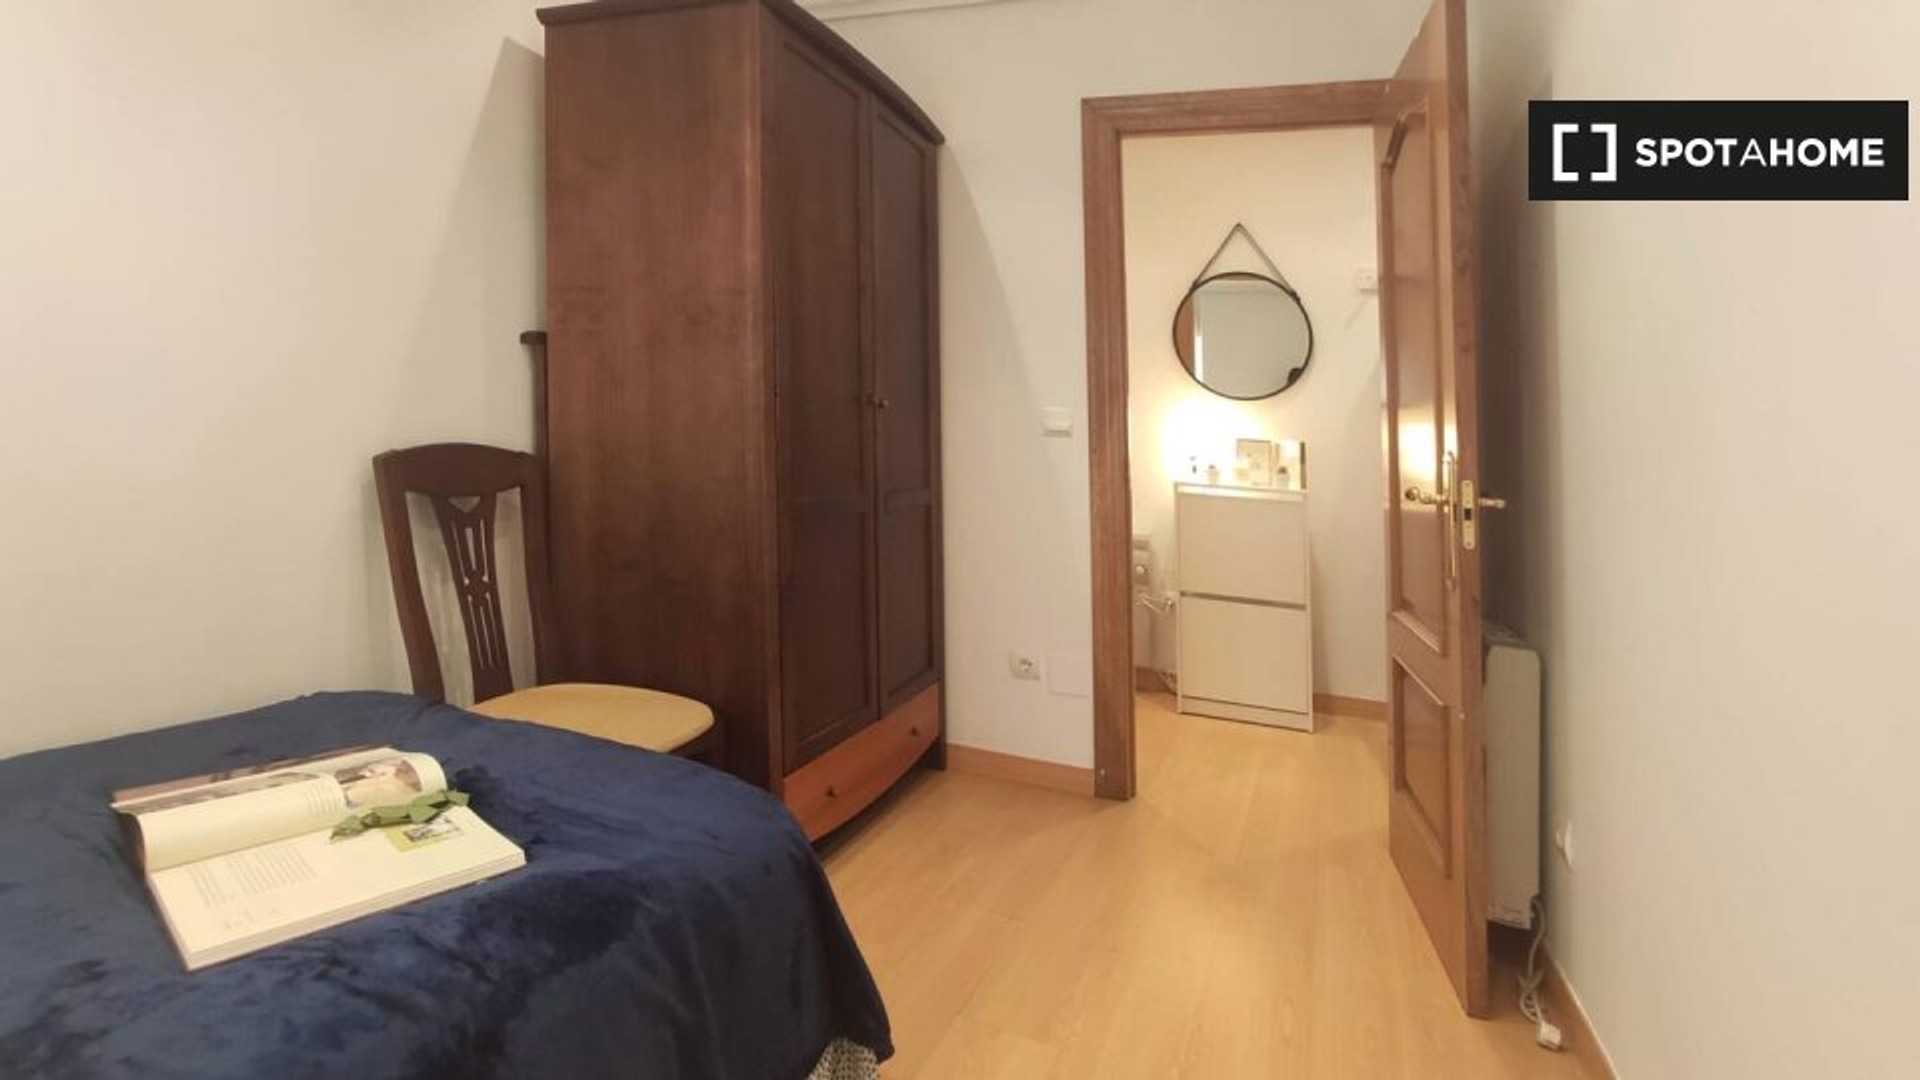 Santander içinde 3 yatak odalı konaklama